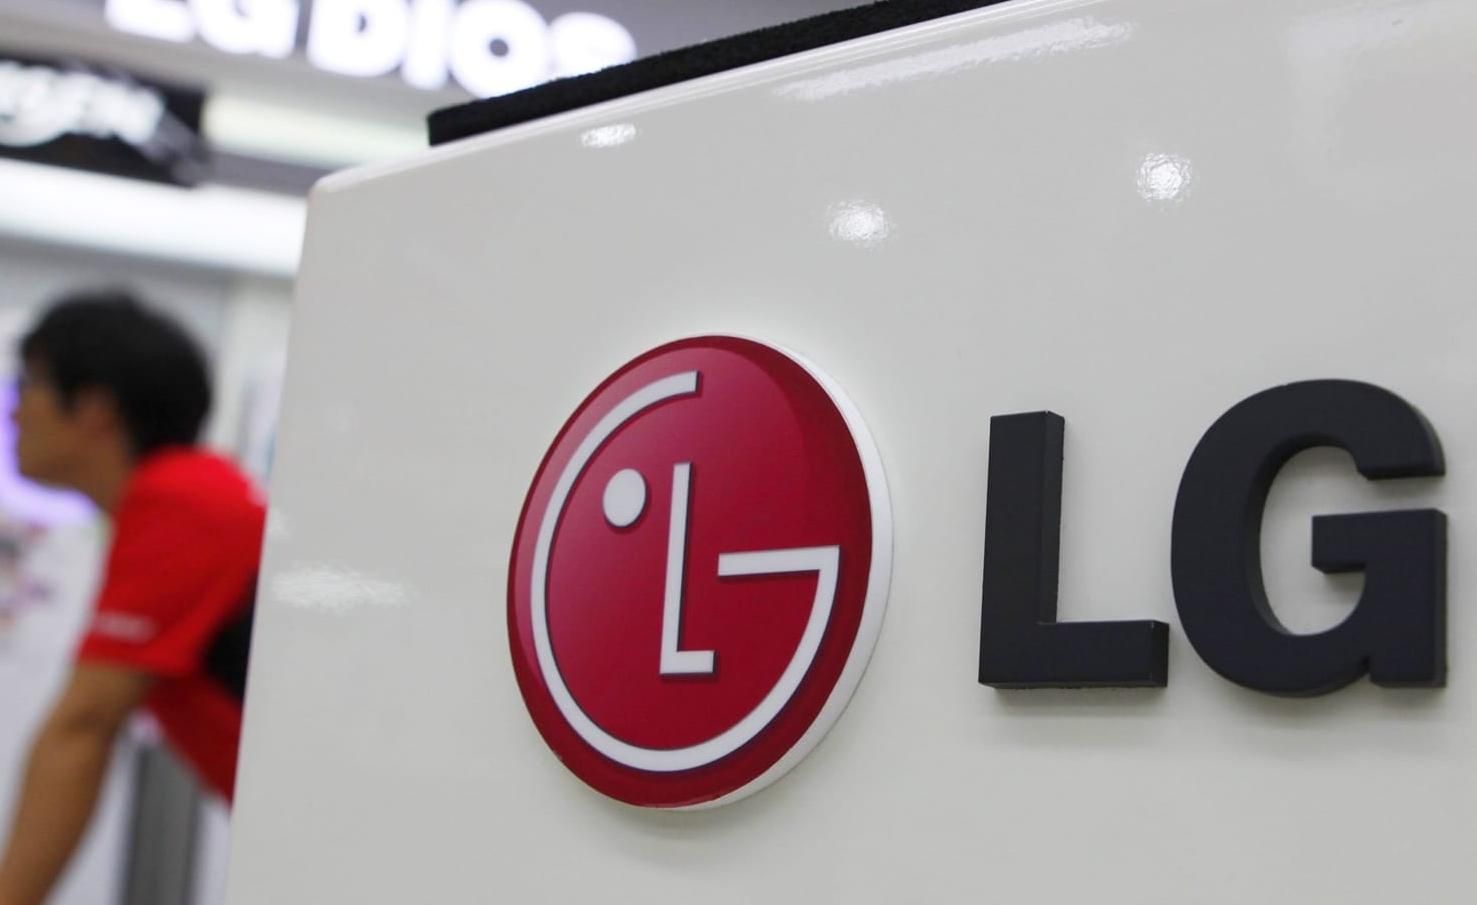 Выпуск бюджетных смартфонов мог привести LG к банкротству